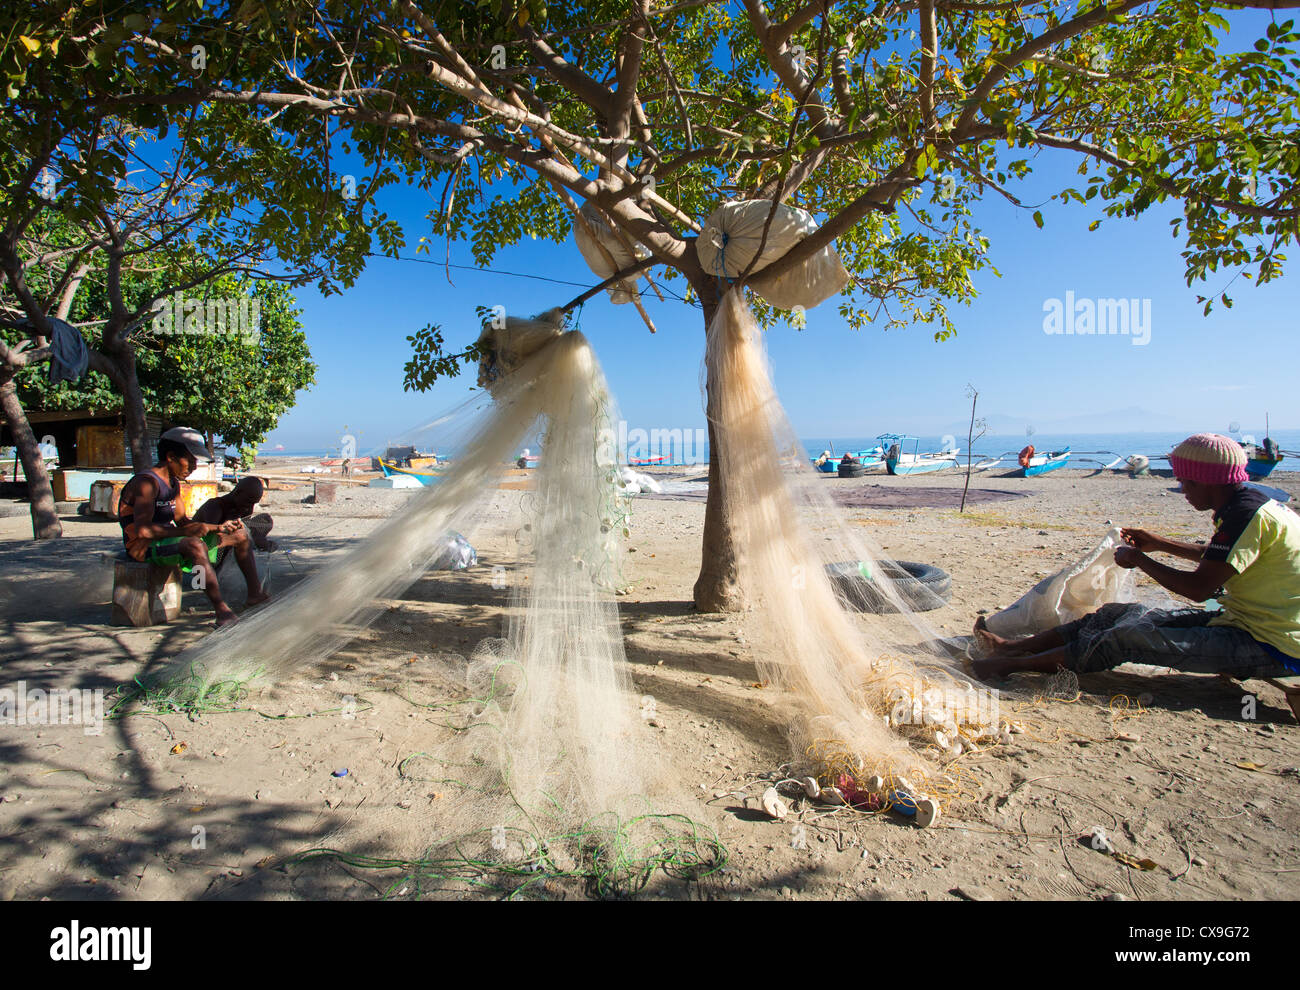 Los hombres remendando sus redes de pesca en una playa, Dili, Timor Oriental Foto de stock